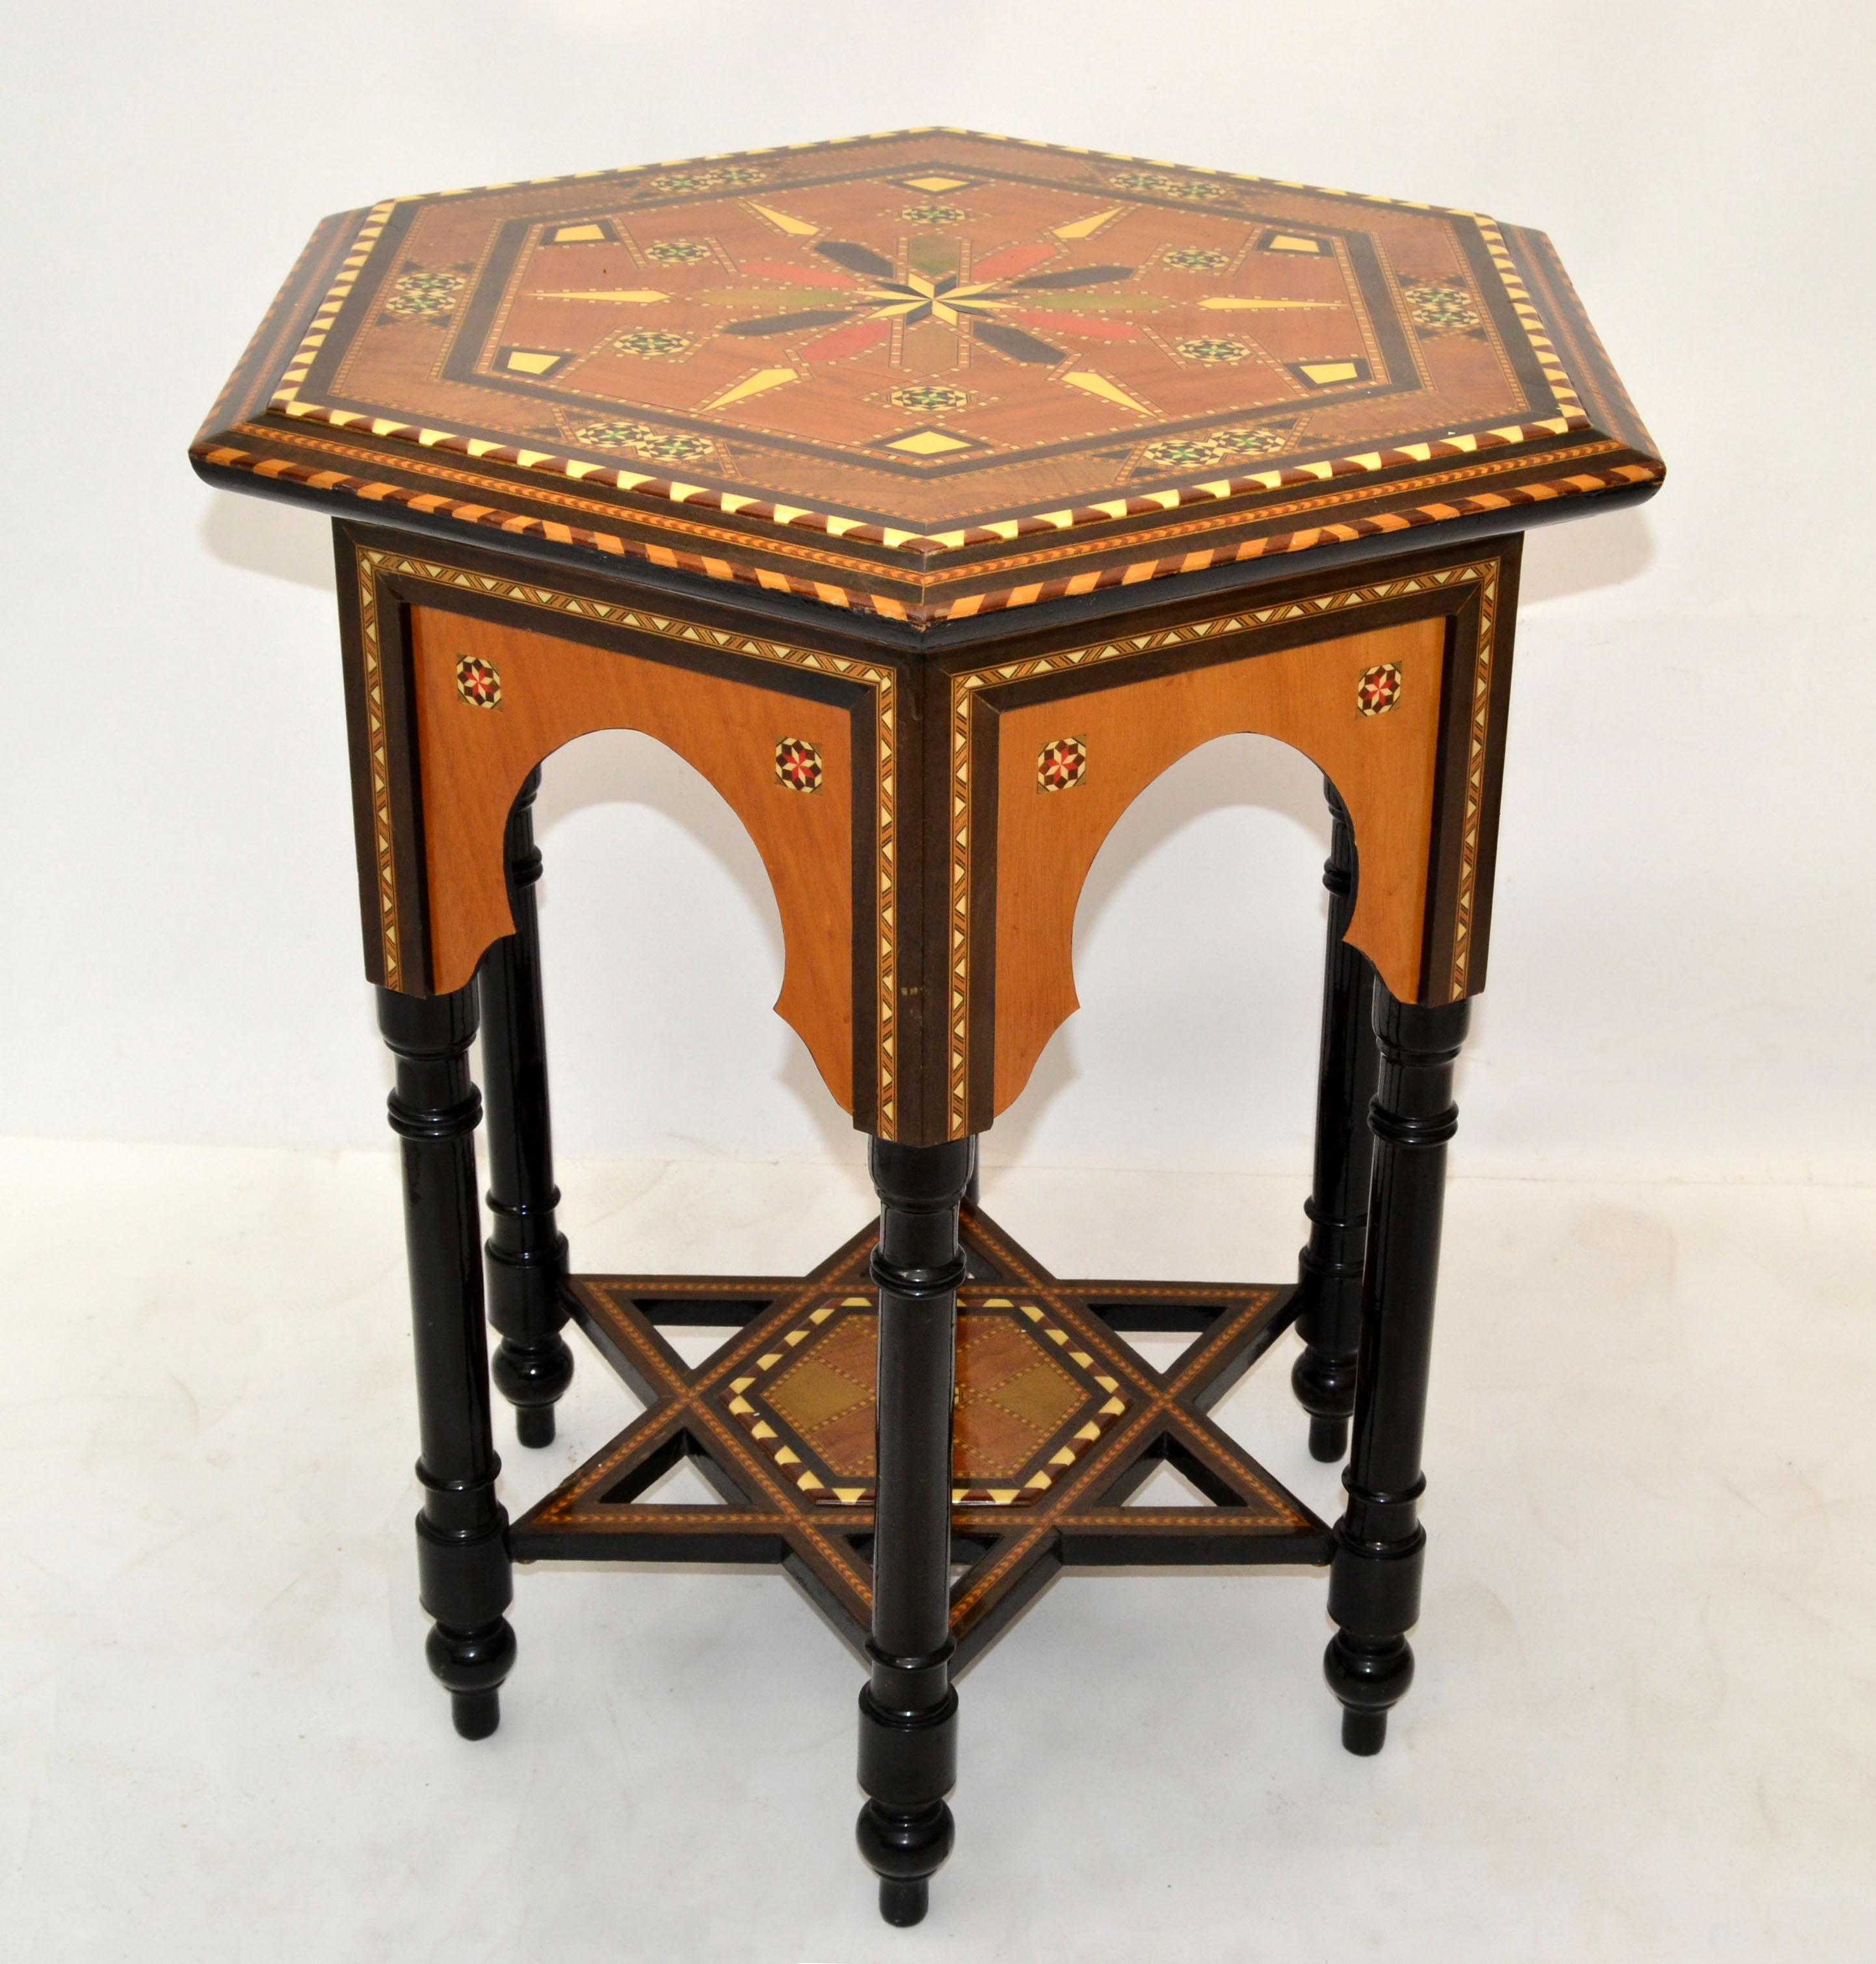 Table centrale en marqueterie de bois hexagonale marocaine faite à la main en bois fruitier du milieu du siècle.
Magnifique motif de marqueterie dans les tons beige, vert, orange et marron.
Tous les pieds en bois tourné d'origine sont en finition